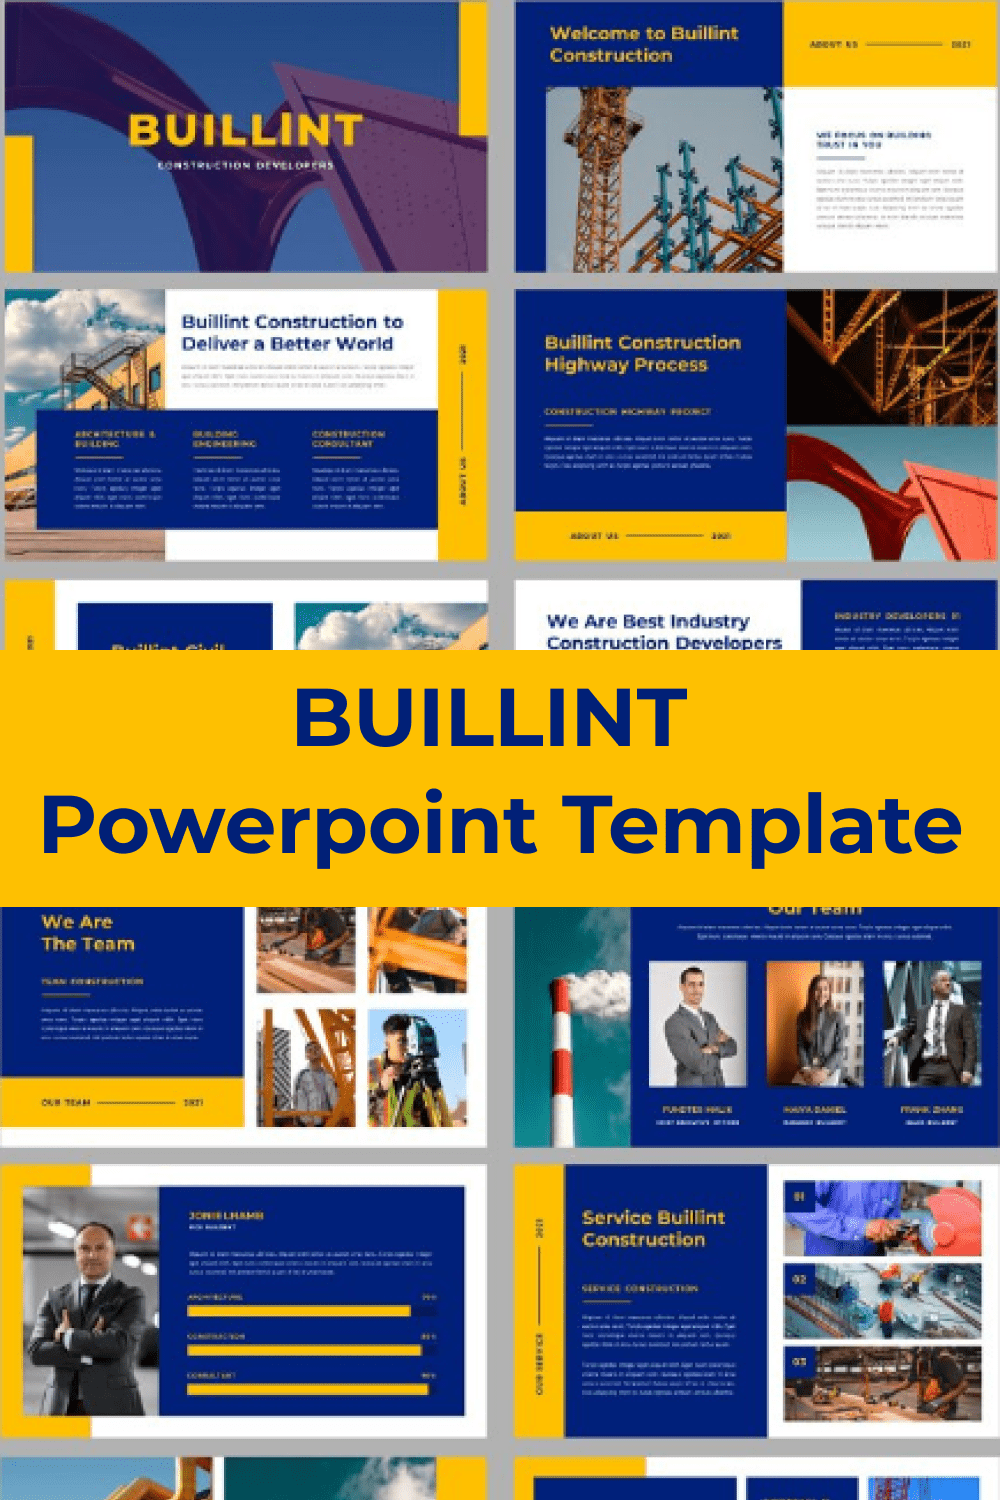 BUILLINT Powerpoint Template pinterest.